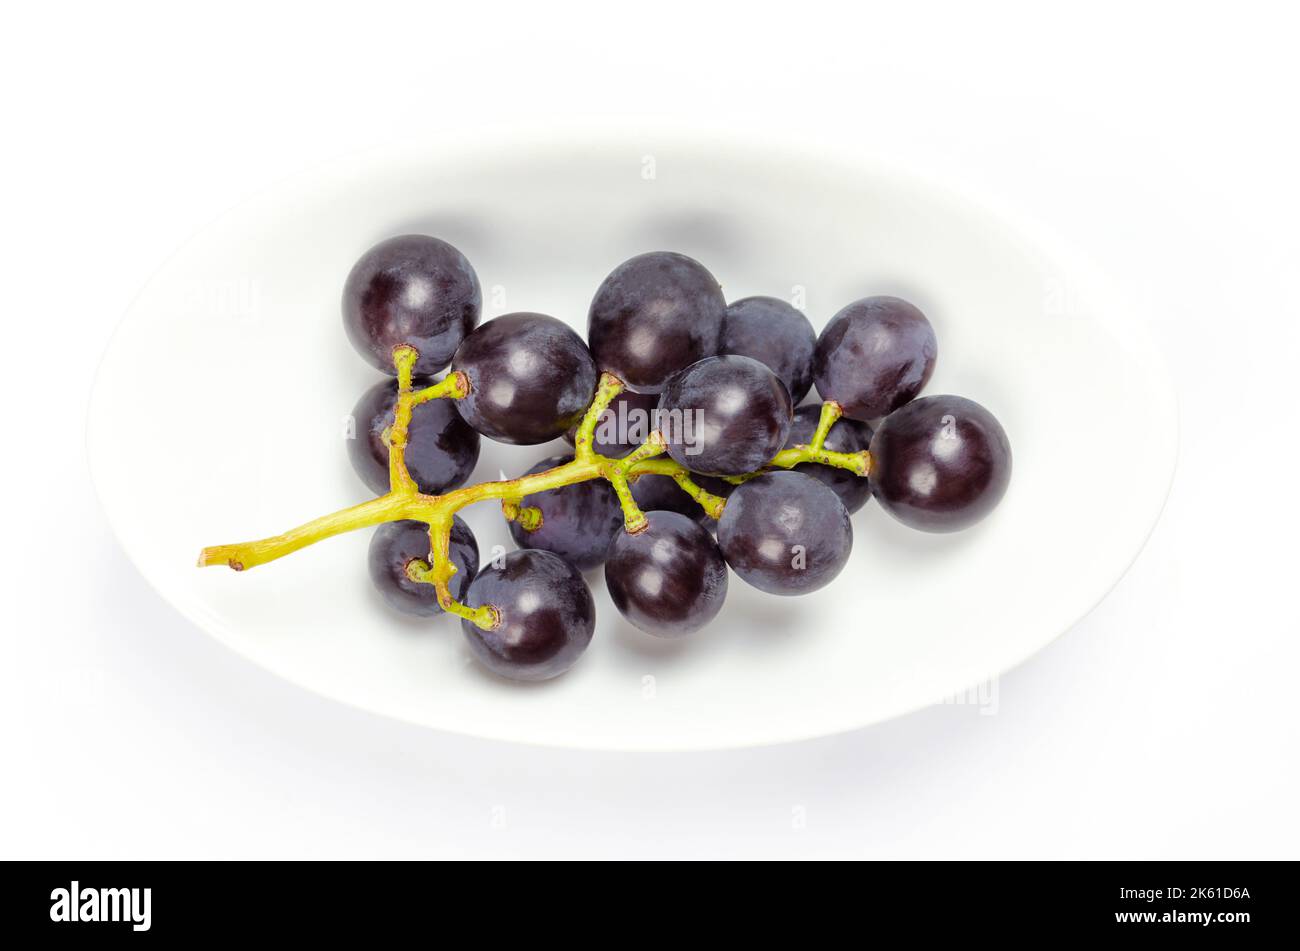 Vignes communes, dans un bol blanc. Vignes fraîchement cueillies de raisins sauvages mûrs, Vitis vinifera, avec de petits raisins pourpres foncé. Banque D'Images